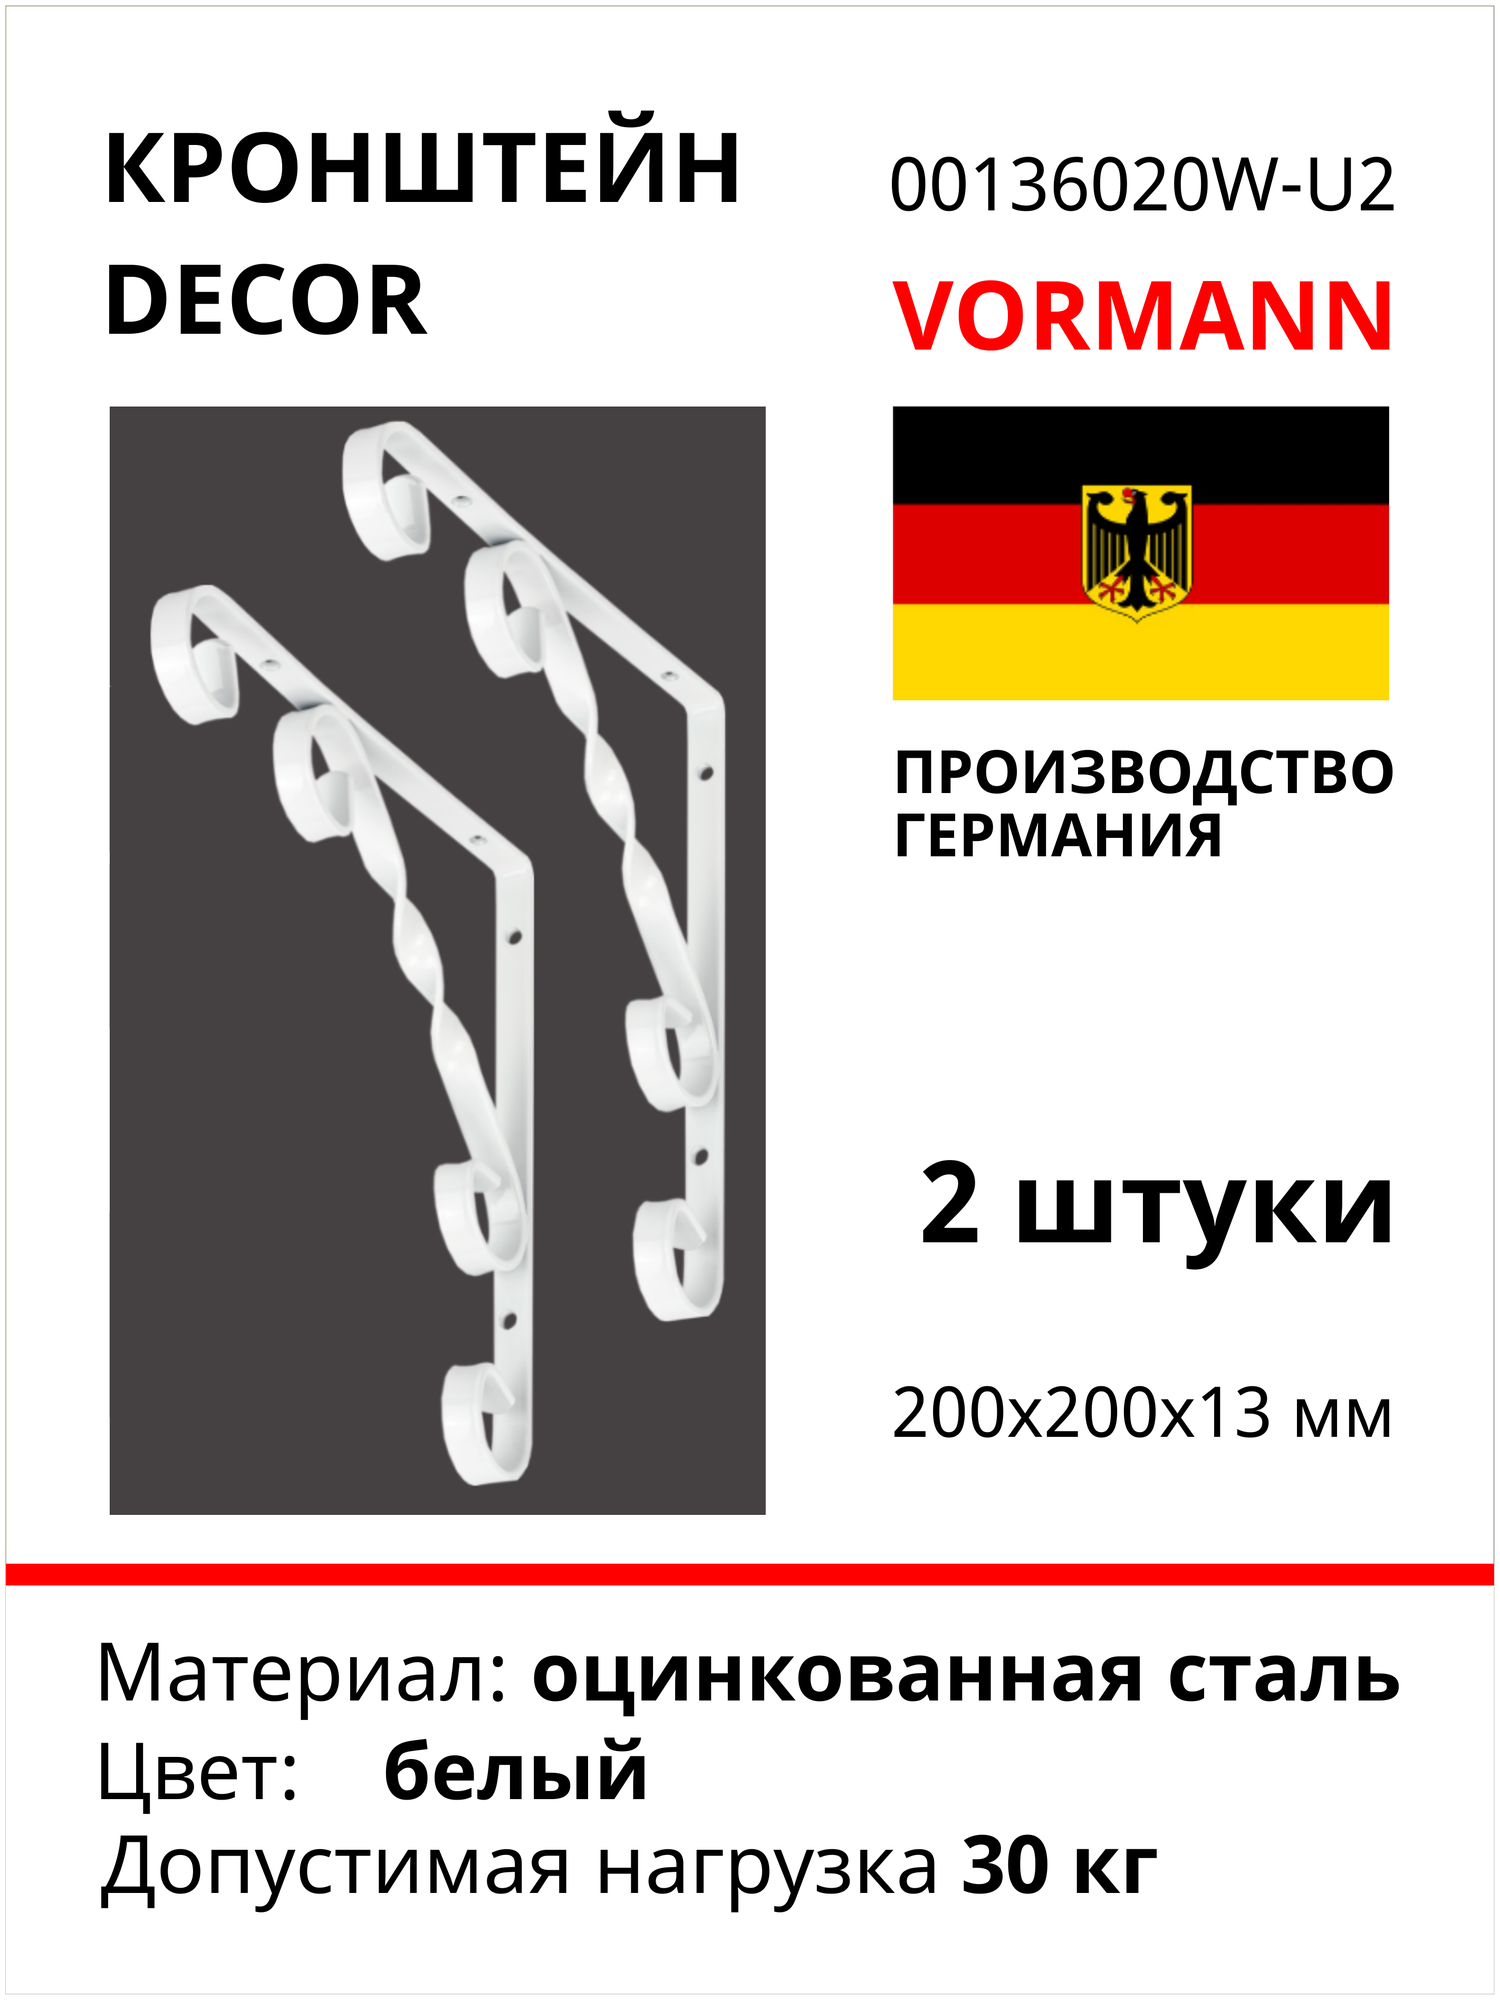 Кронштейн VORMANN Decor 205x205х14 мм, цвет: белый 00136 020 W, 2 шт